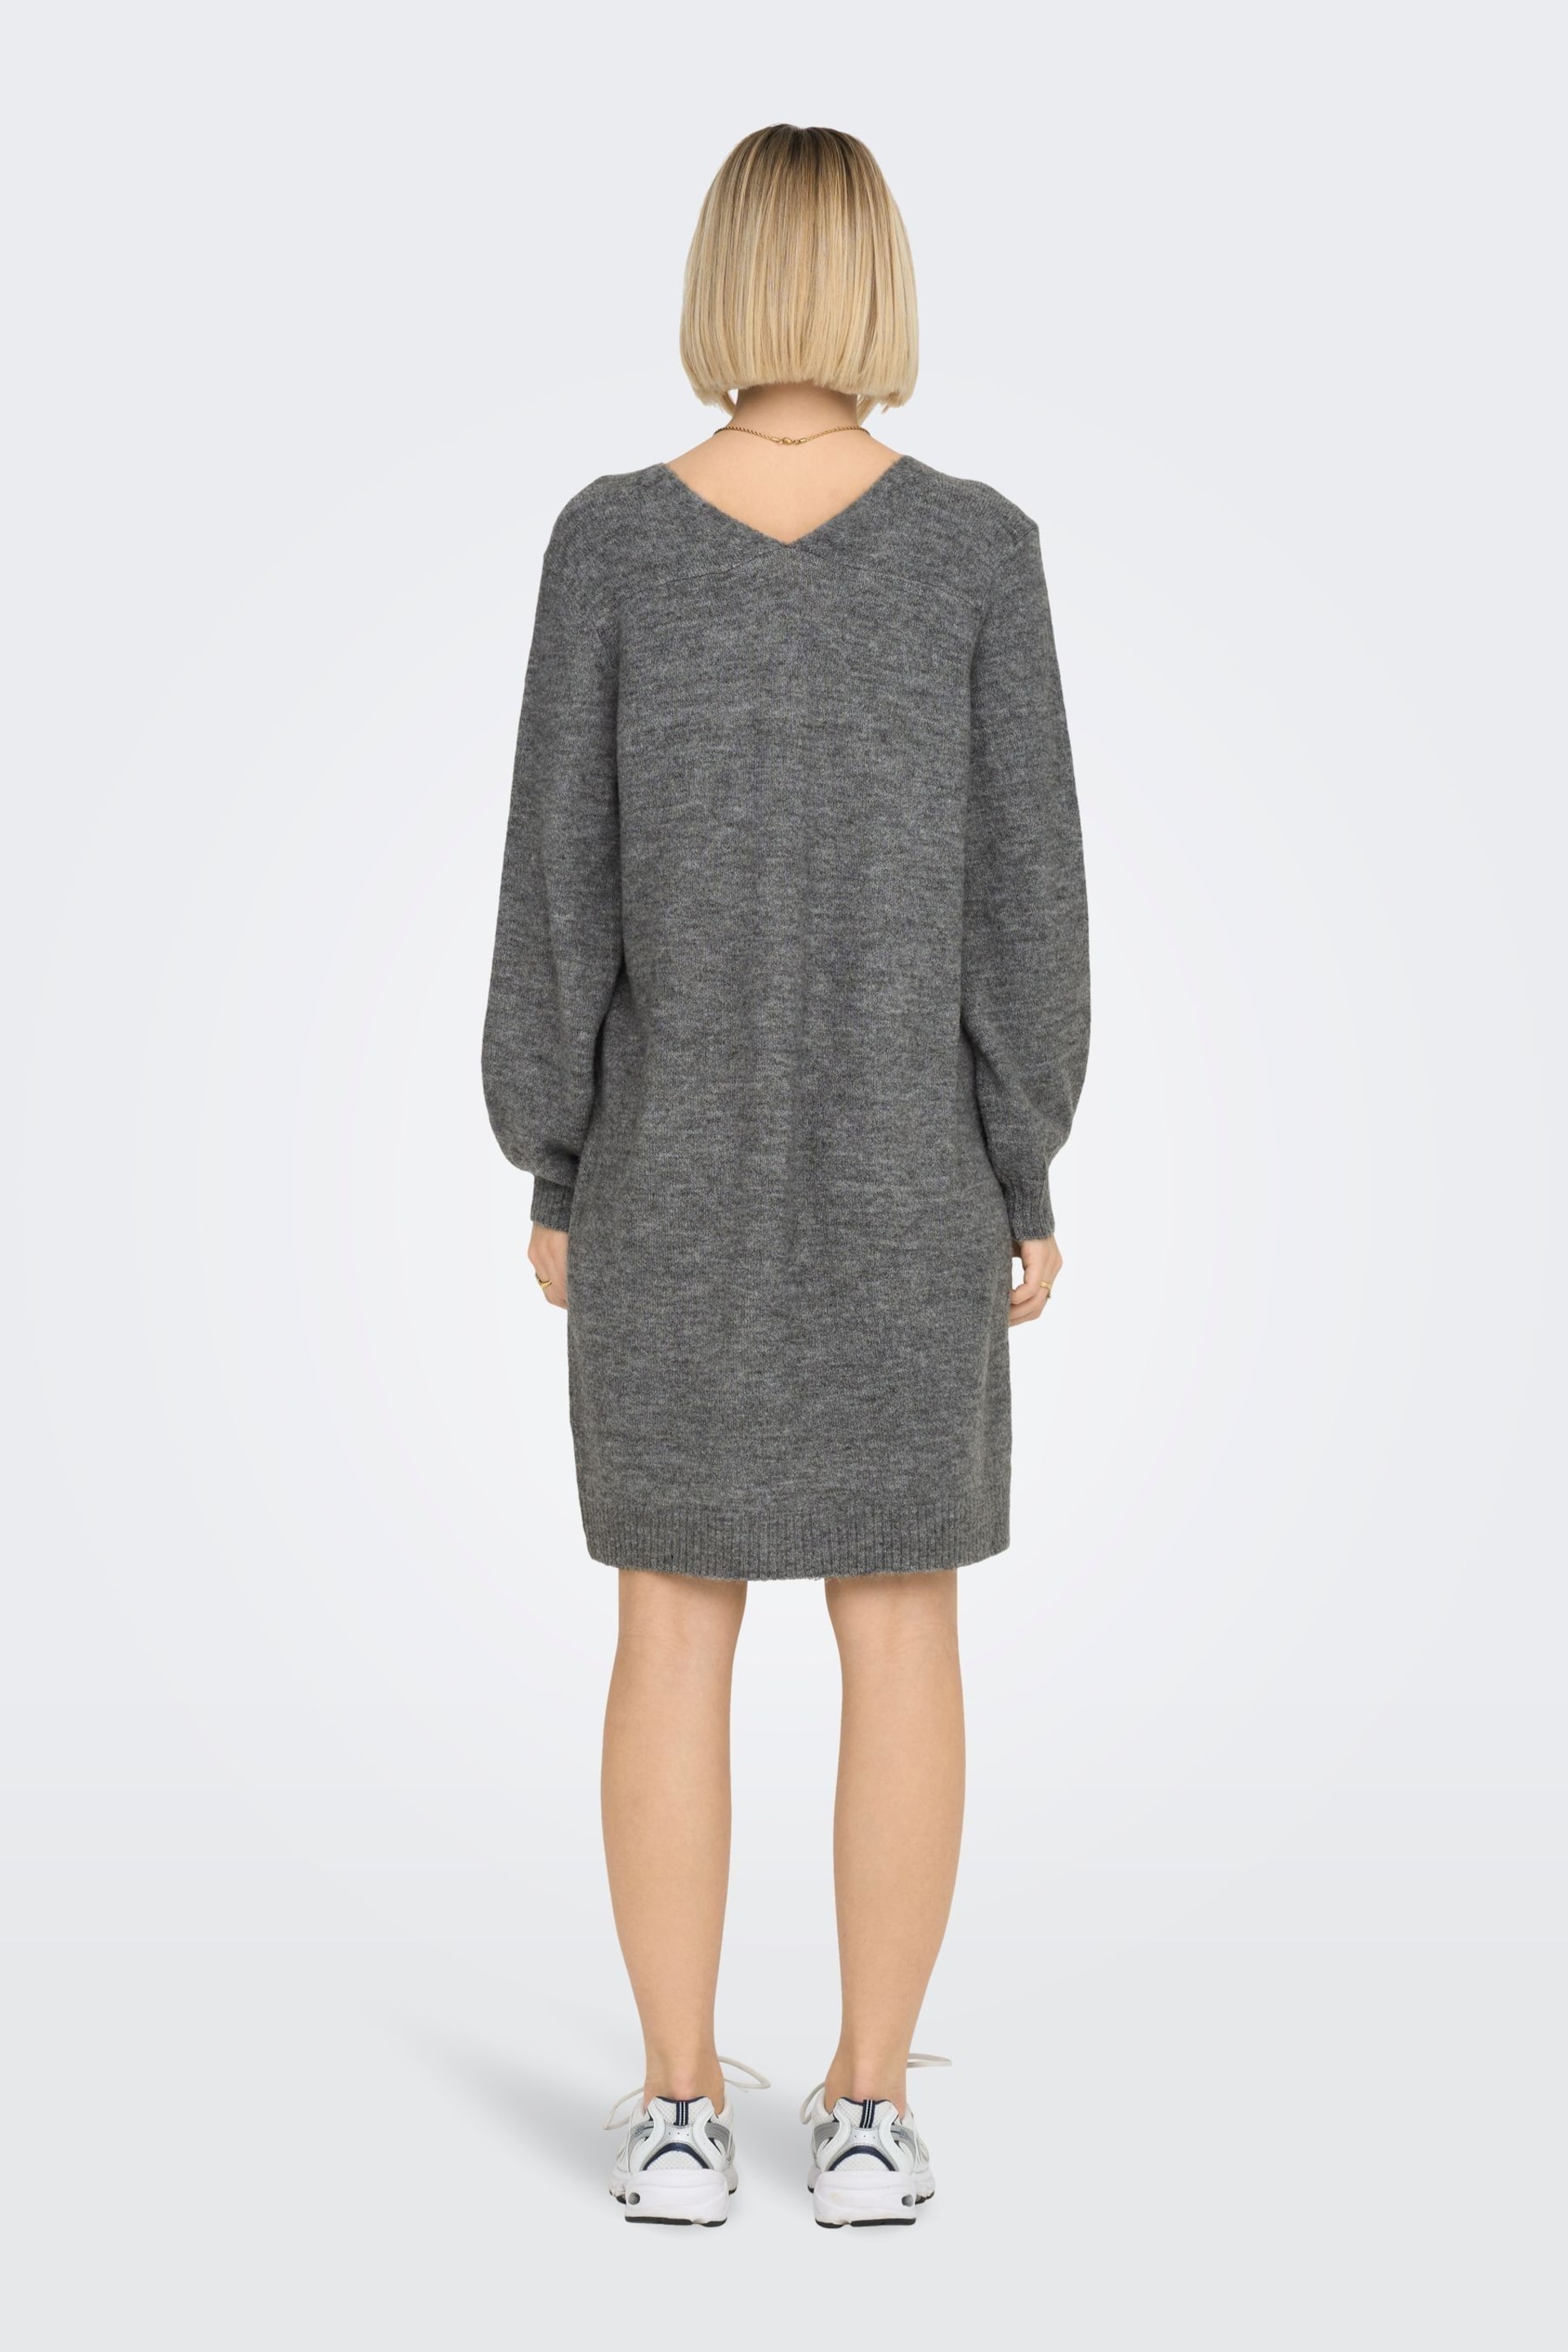 JDY Grey V-Neck Knitted Jumper Dress - Image 3 of 6